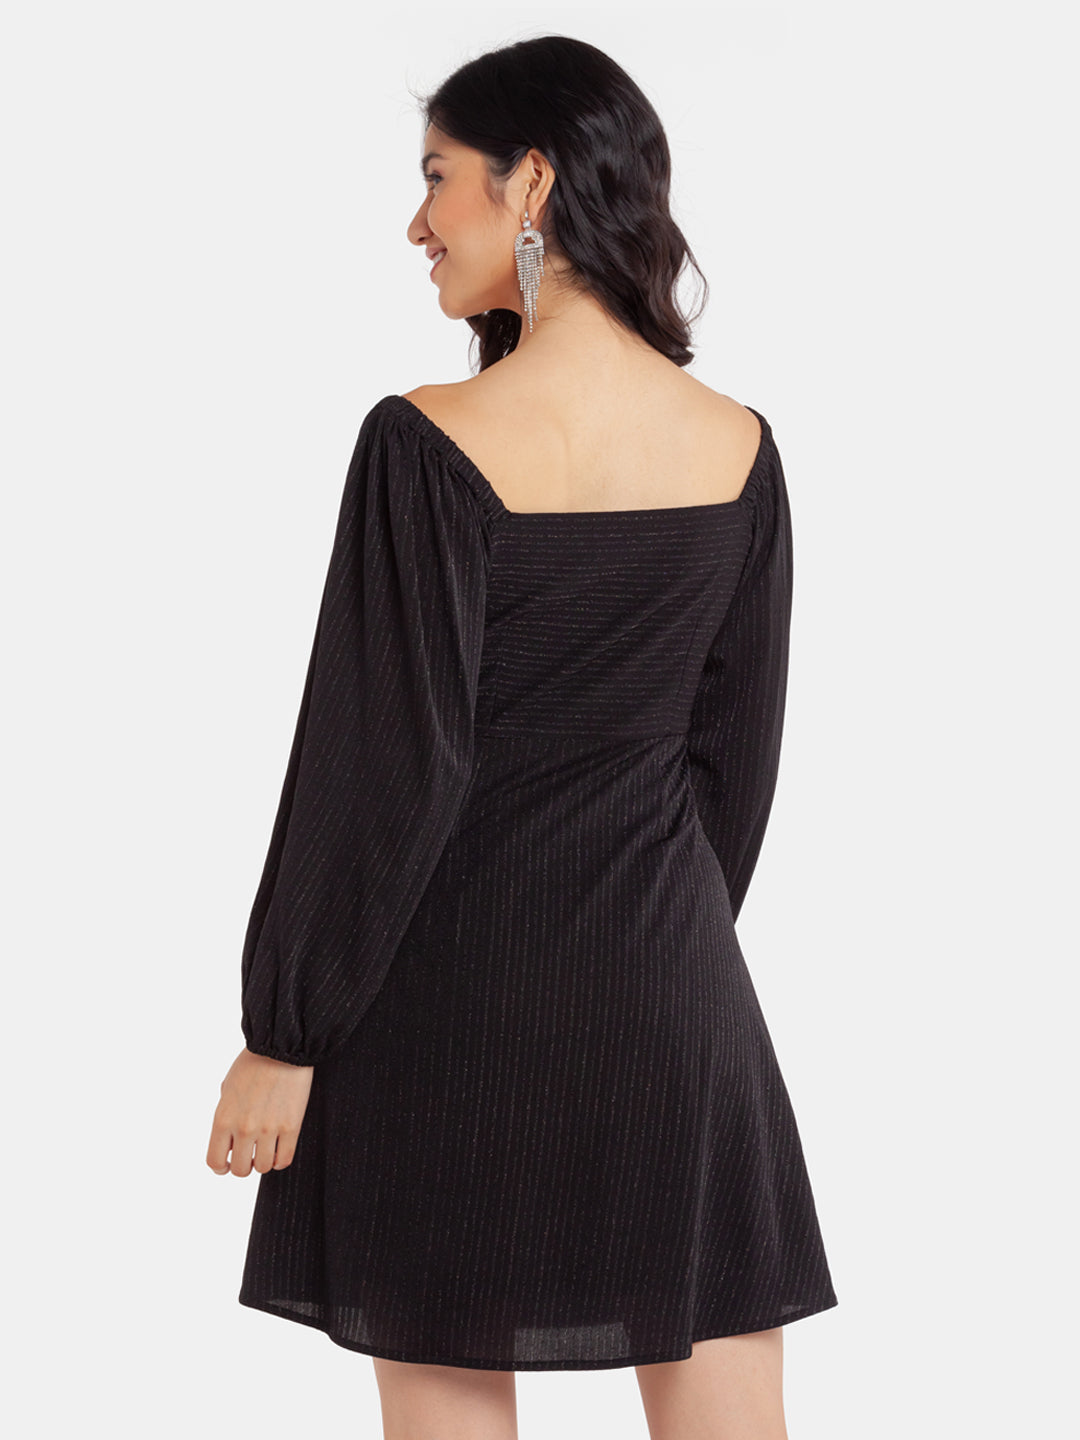 Black Shimmer Ruched  Short Dress For Women